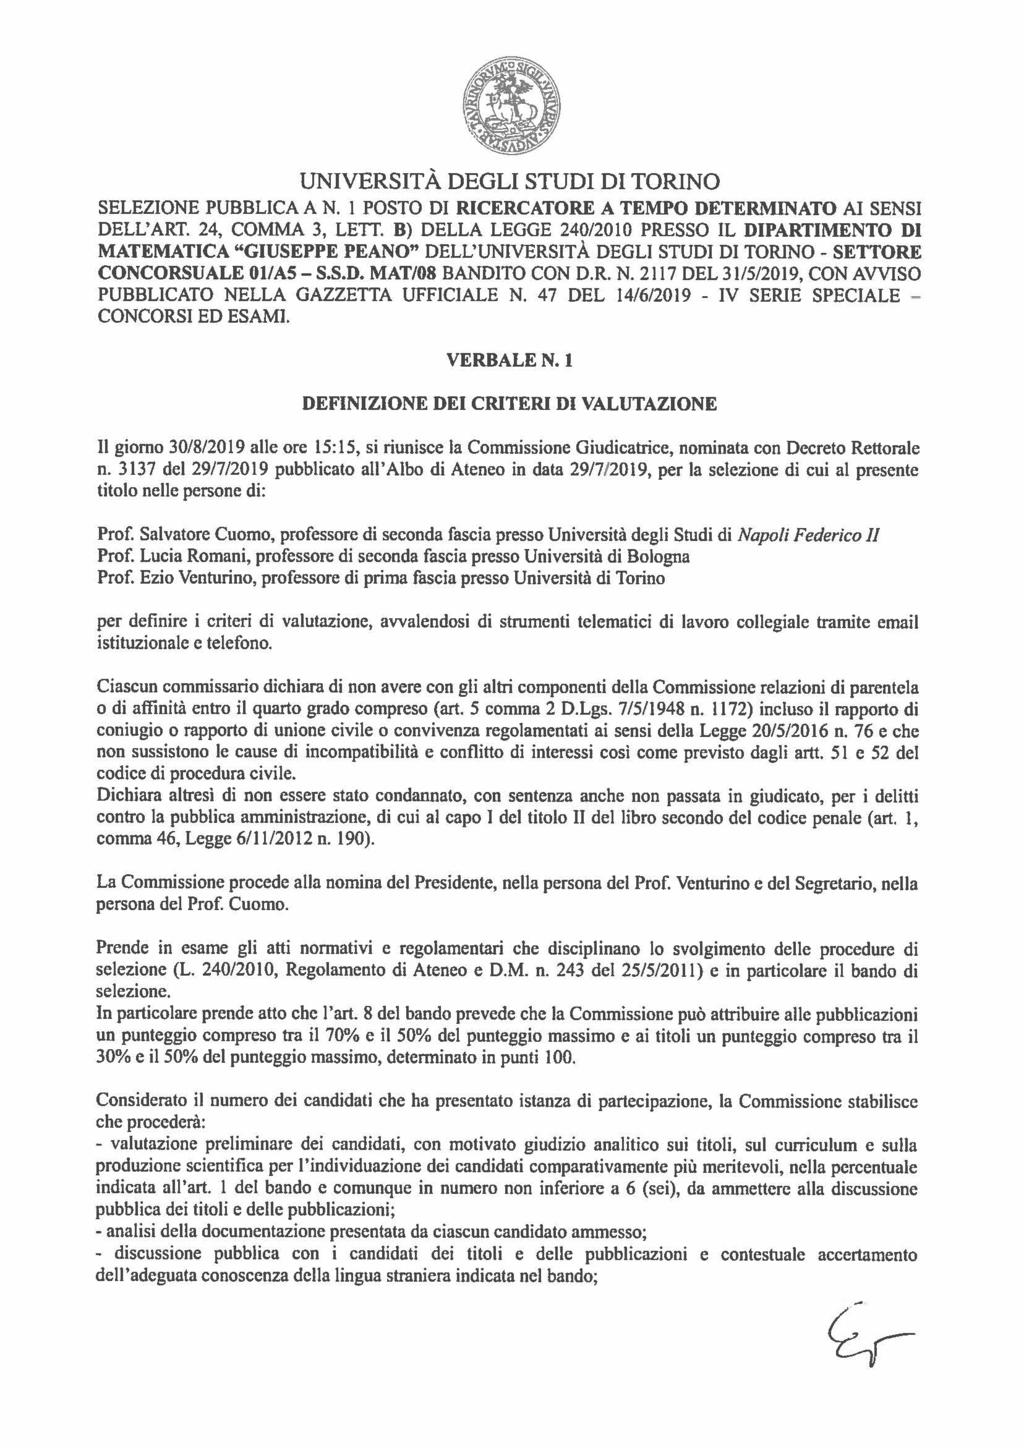 SELEZIONE PUBBLICA AN. 1 POSTO DI RICERCATORE A TEMPO DETERMINATO AI SENSI DELL'ART. 24, COMMA 3, LETT.